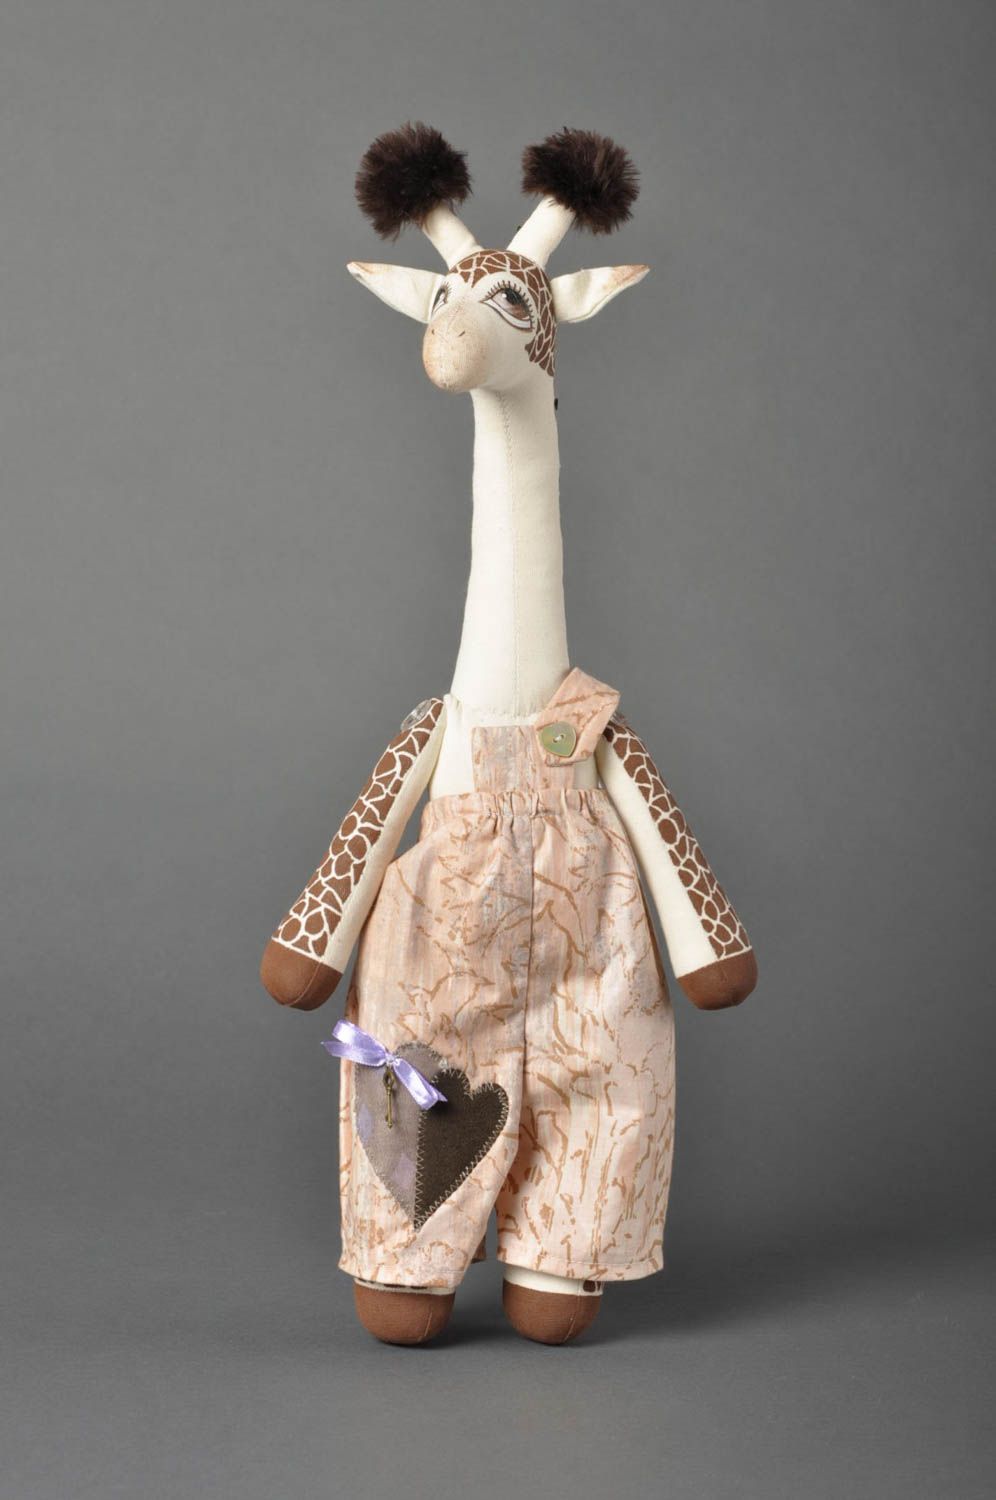 Игрушка жираф ручной работы детская игрушка расписанная акрилом мягкая игрушка фото 1